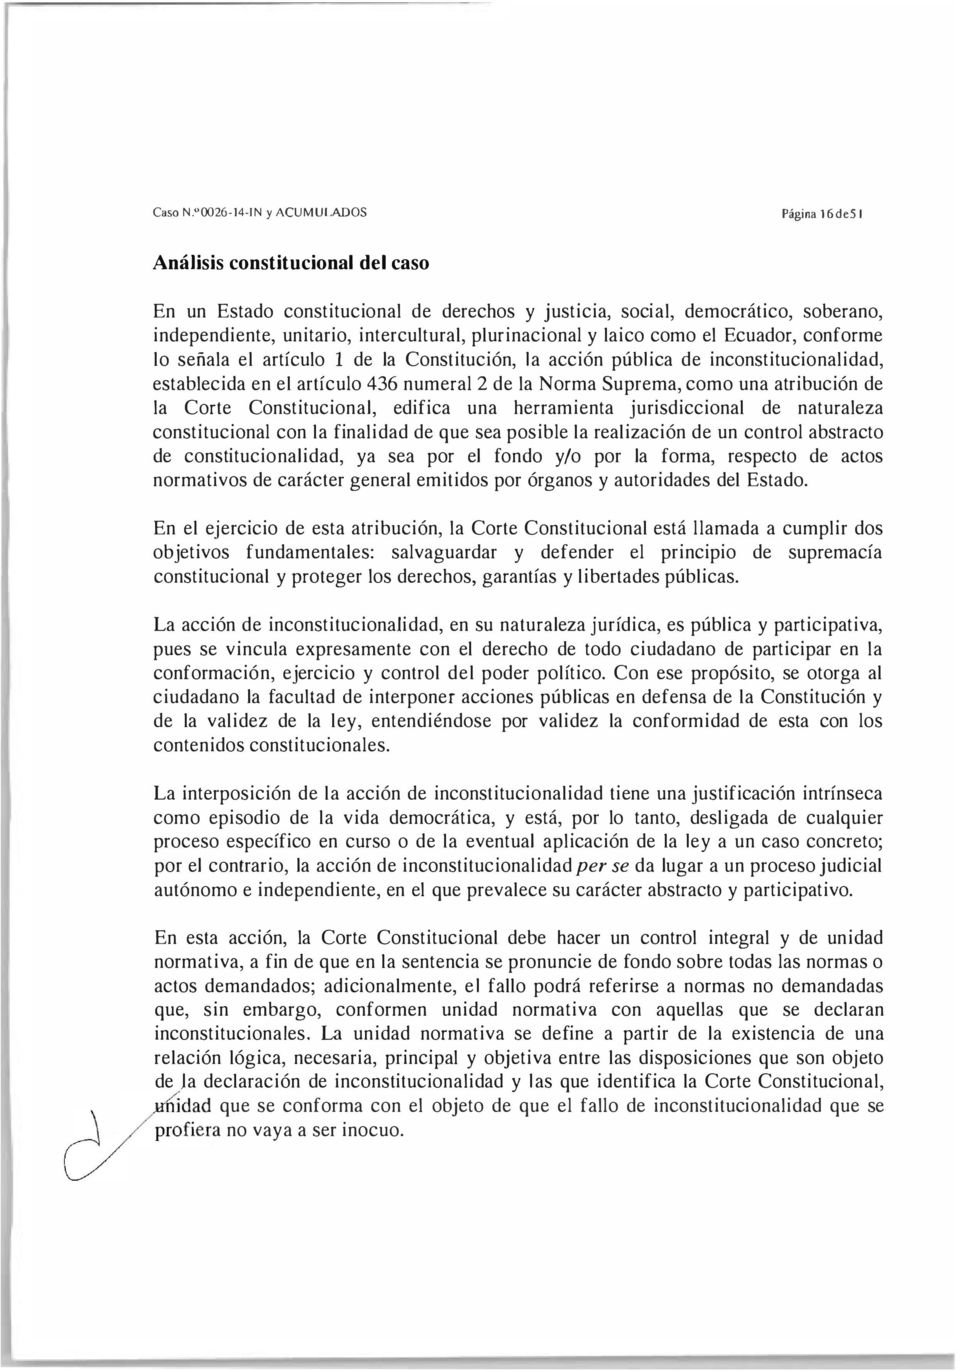 plurinacional y laico como el Ecuador, conforme lo señala el artículo 1 de la Constitución, la acción pública de inconstitucionalidad, establecida en el artículo 436 numeral 2 de la Norma Suprema,